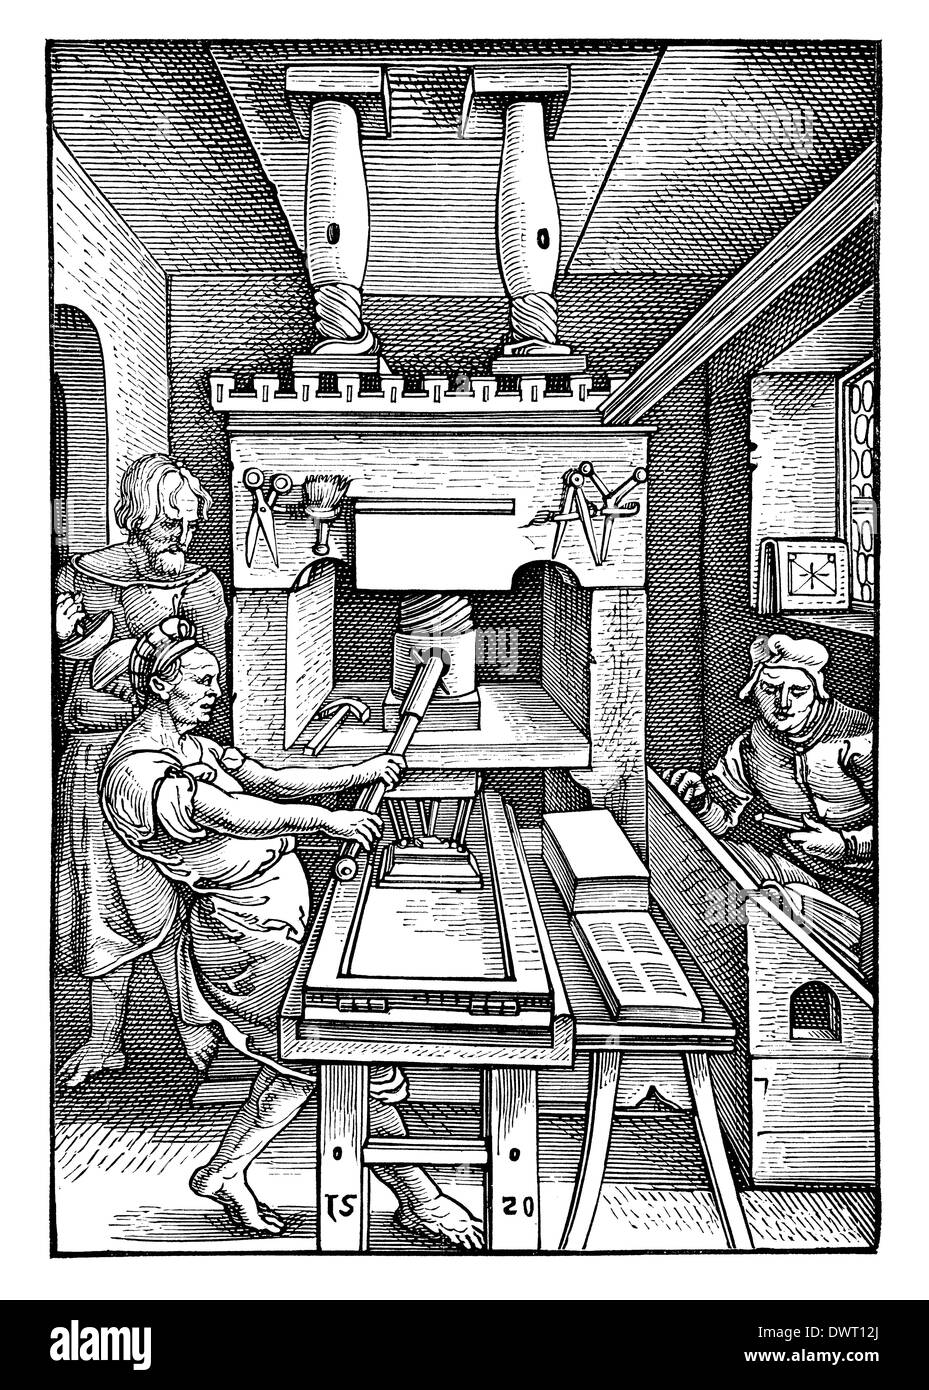 Abbildung einer Buchdruckpresse von 1520. Aus der Sammlung des Börsenvereins der deutschen Buchhändler zu Leipzig Stock Photo